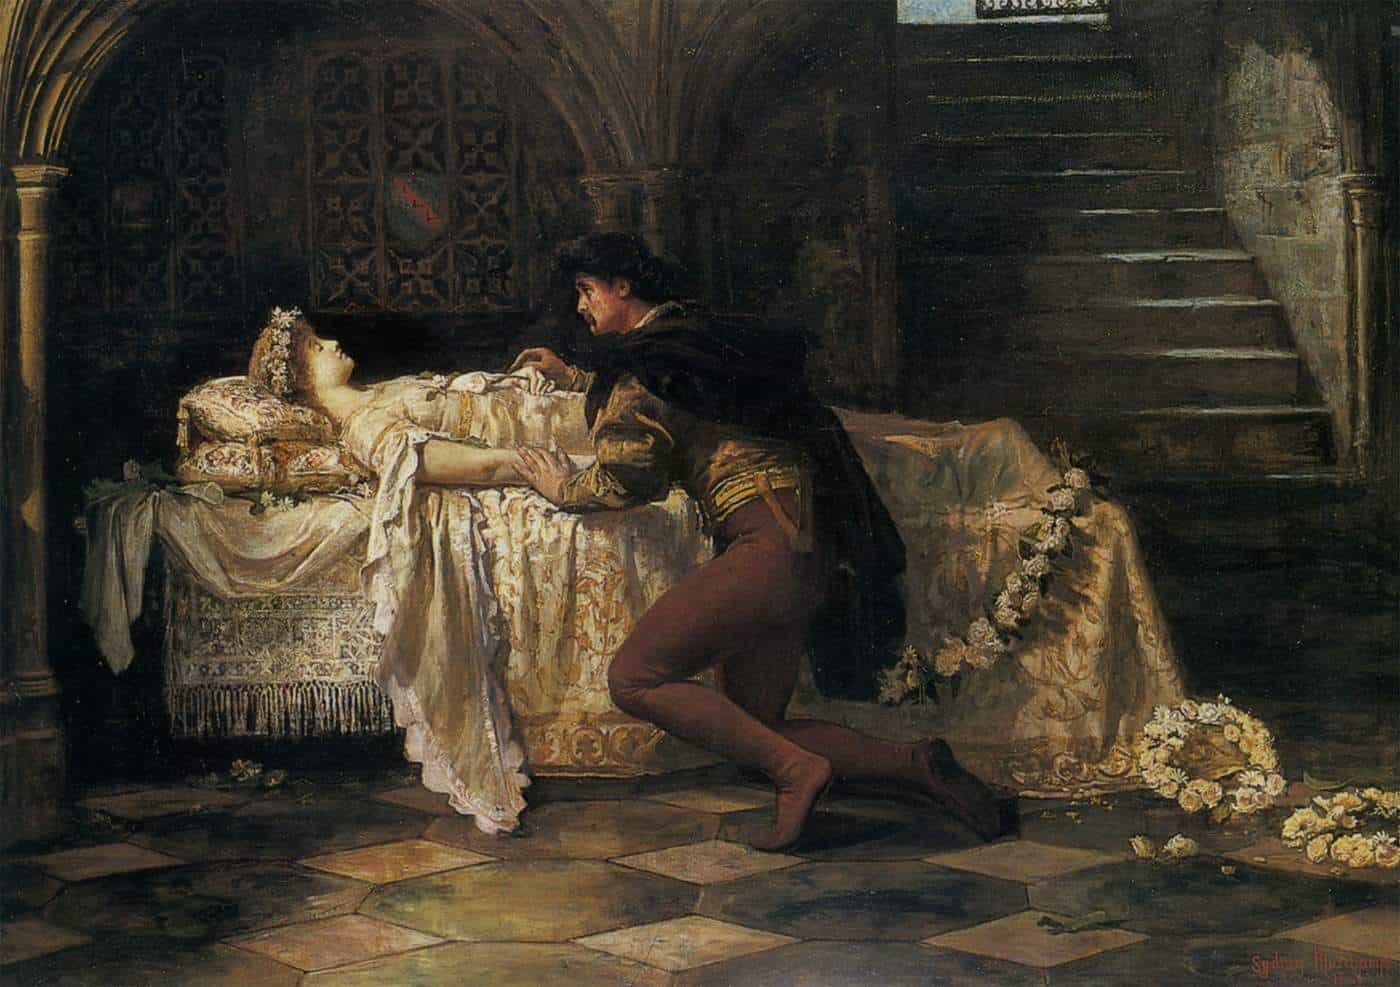  Historia de Romeo y Julieta, ¿qué fue de la pareja?